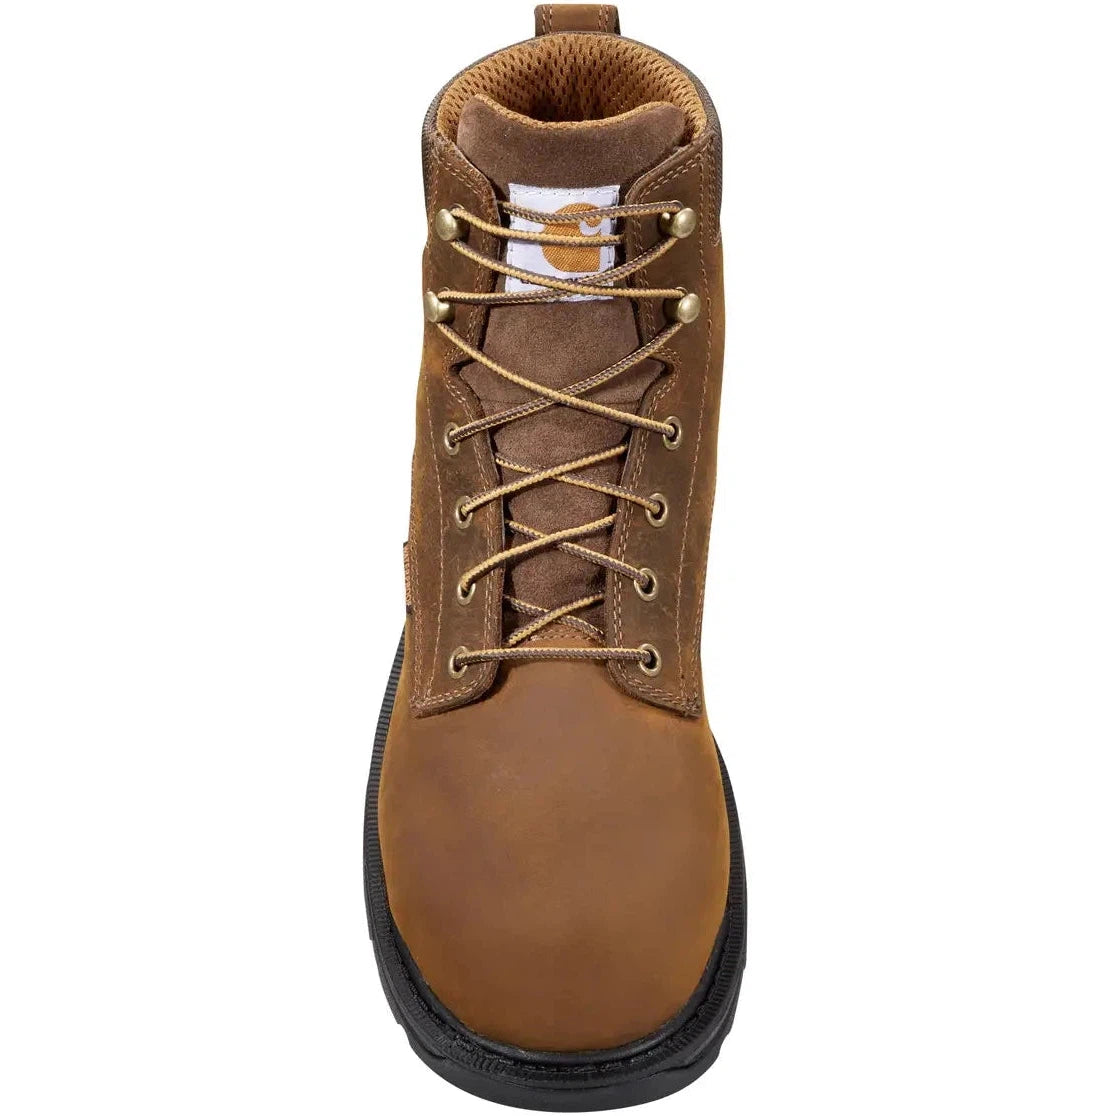 Carhartt Men's Ironwood 6" Waterproof Alloy Toe Work Boot - Brown - FT6500-M  - Overlook Boots